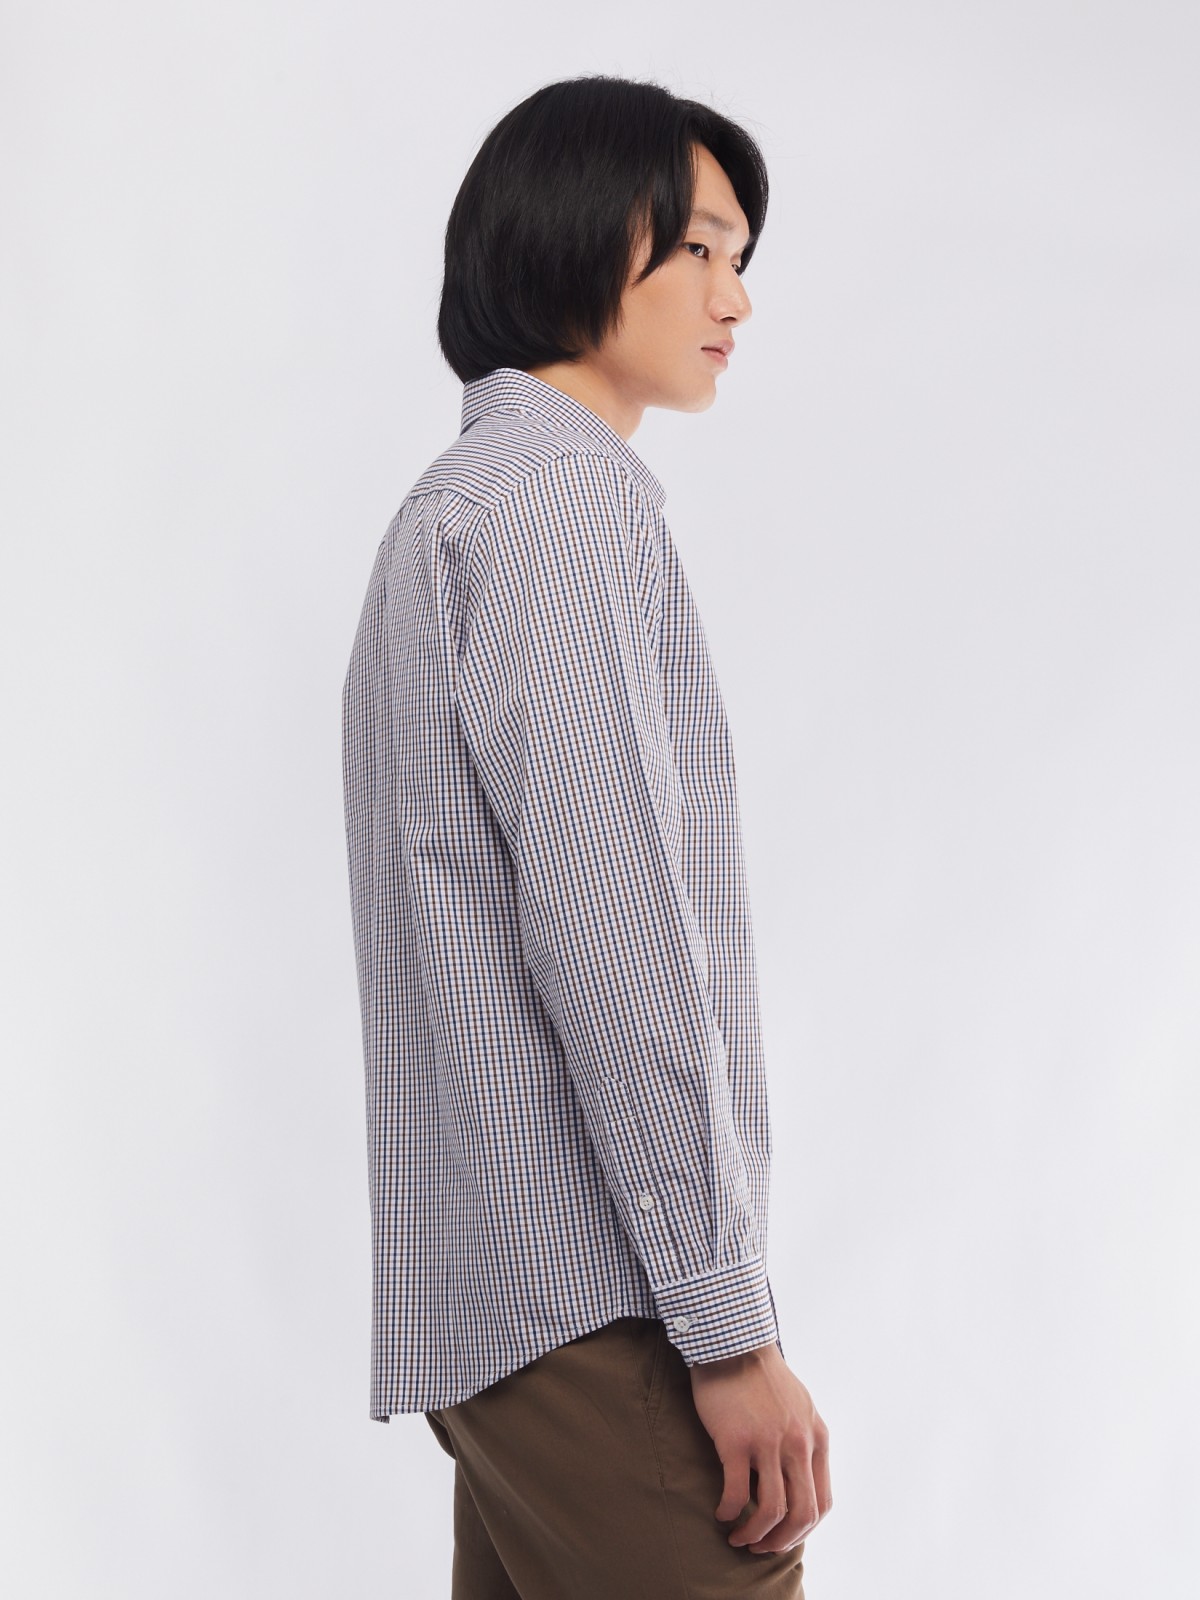 Офисная рубашка прямого силуэта с узором в клетку zolla 014112159012, цвет бежевый, размер M - фото 4